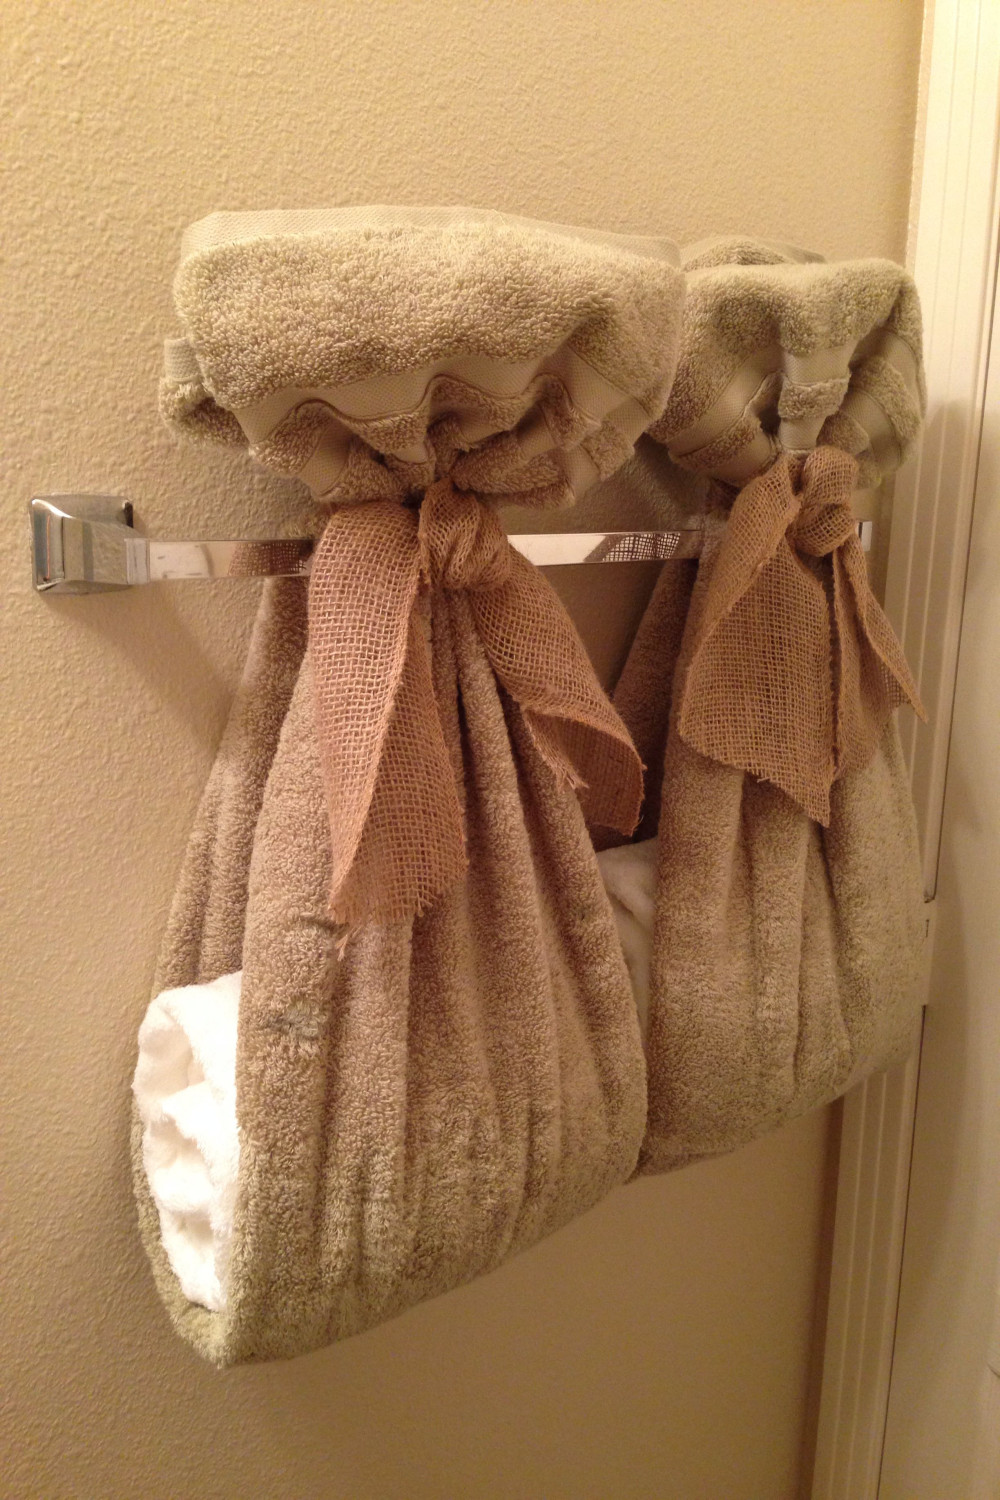 Bathroom towels  Bathroom towel decor, Decorative bath towels